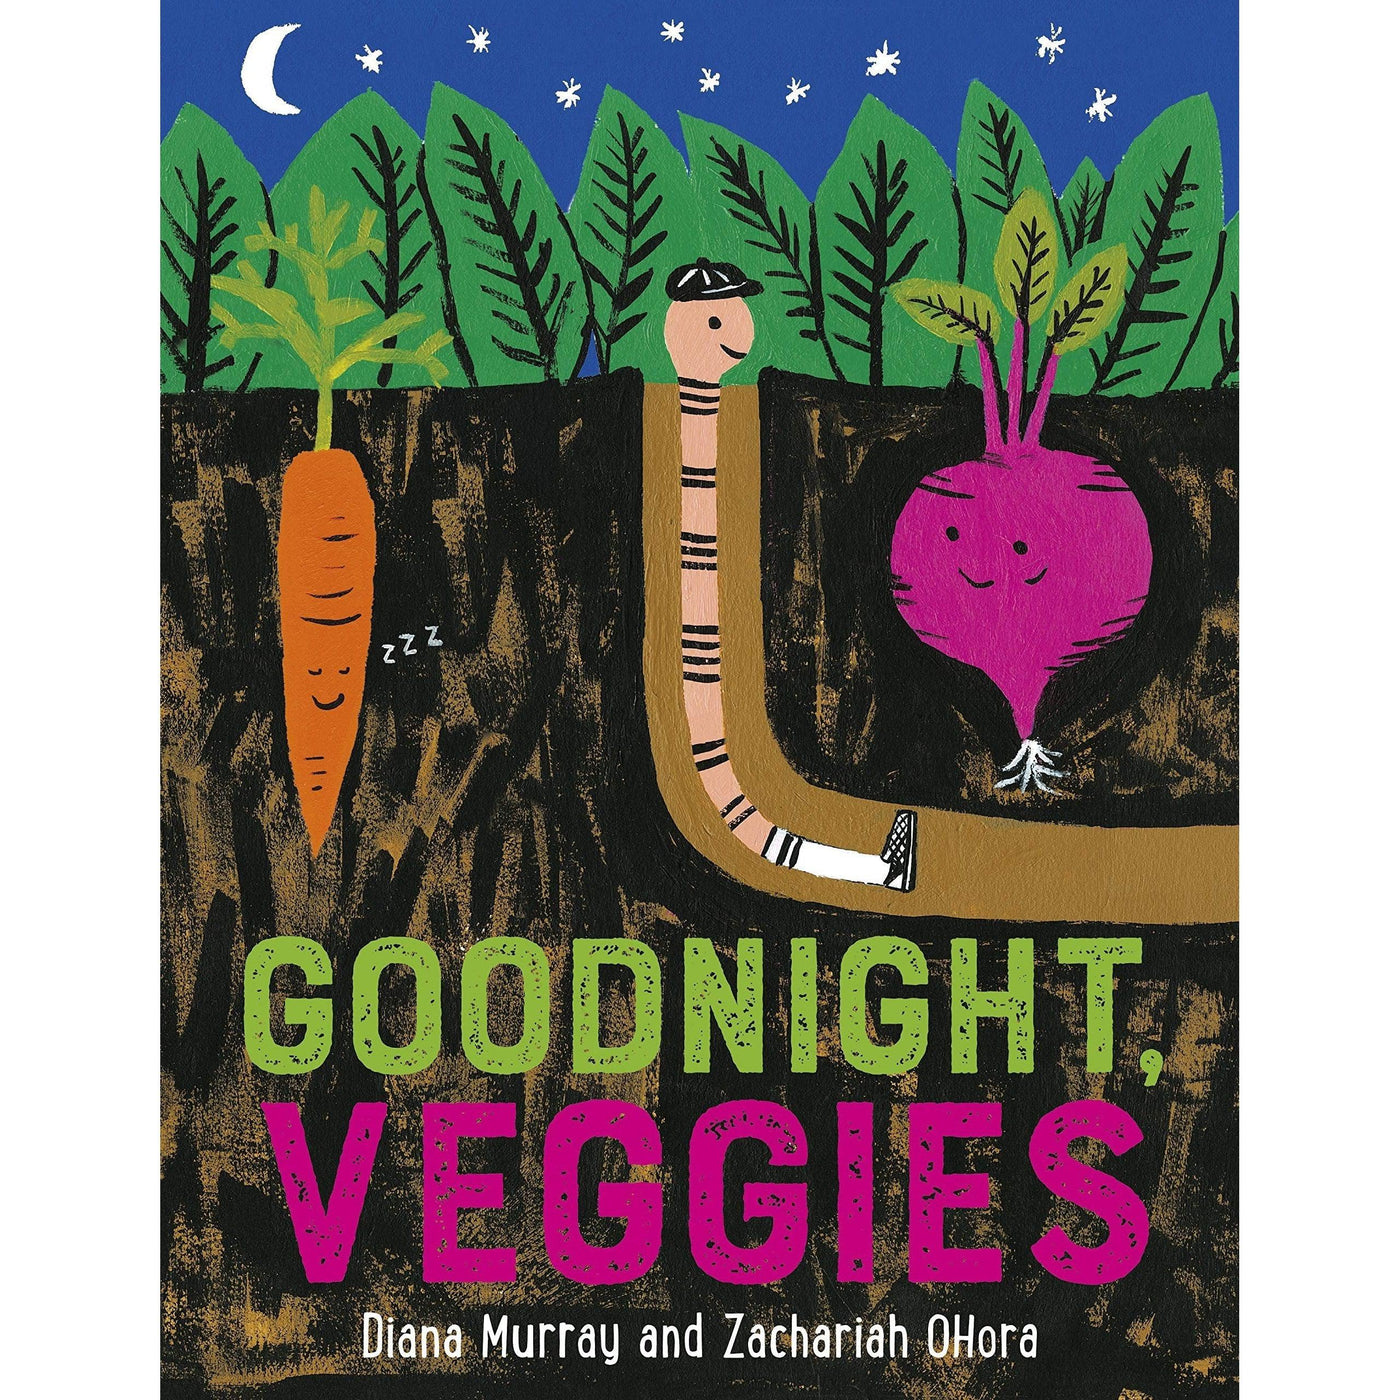 Goodnight Veggies - Diana Murray